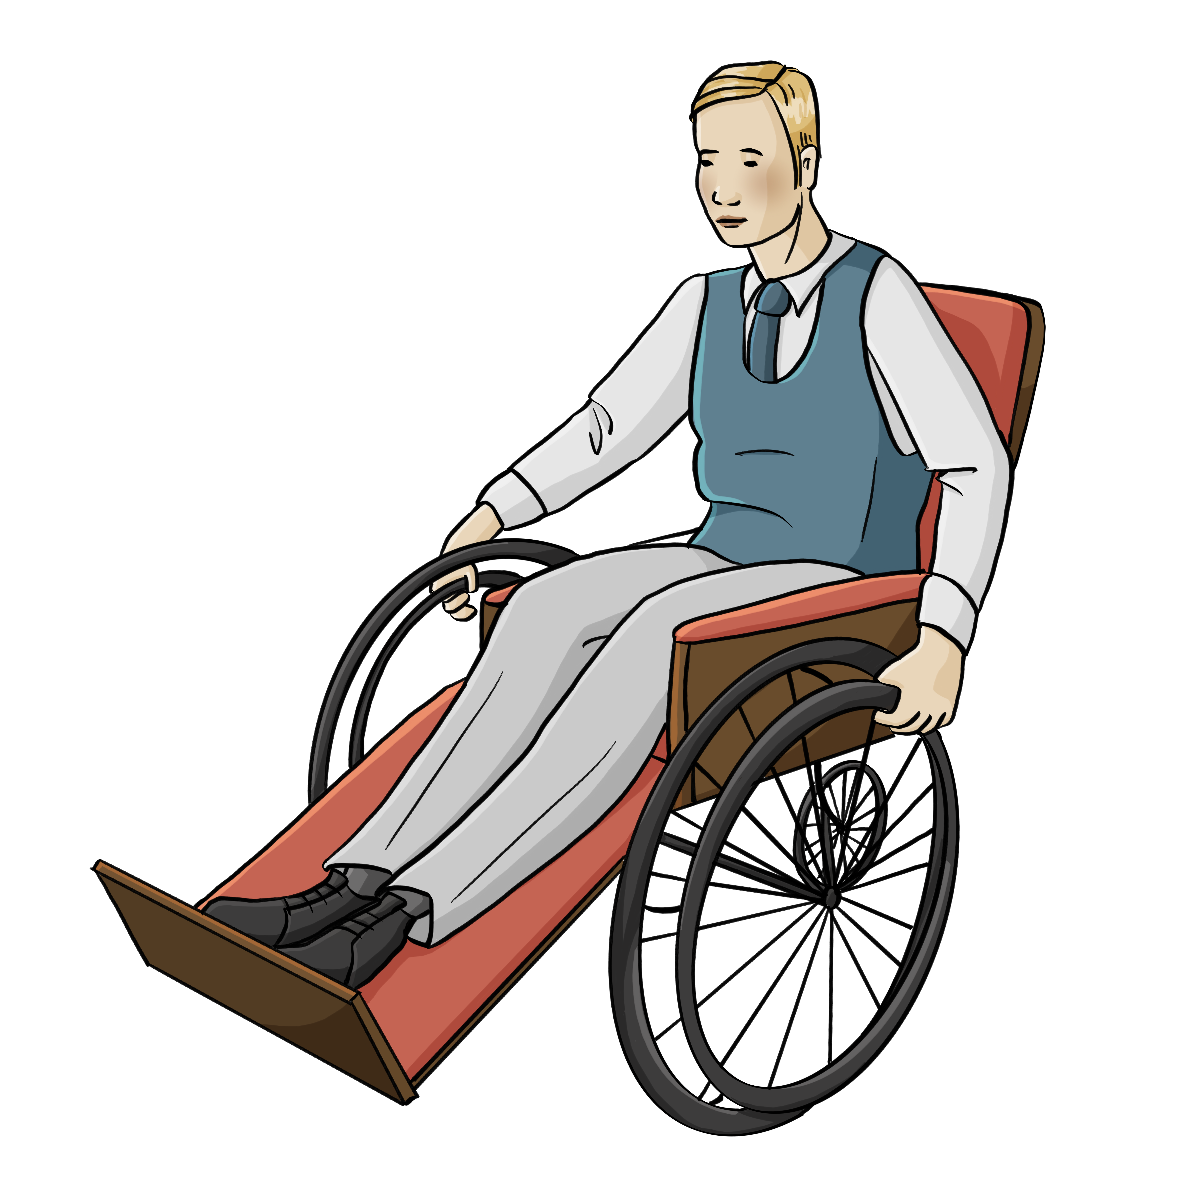 Ein Mann sitzt in einem Rollstuhl. Der Rollstuhl und die Kleidung des Mannes sind im Stil der 30er Jahre.